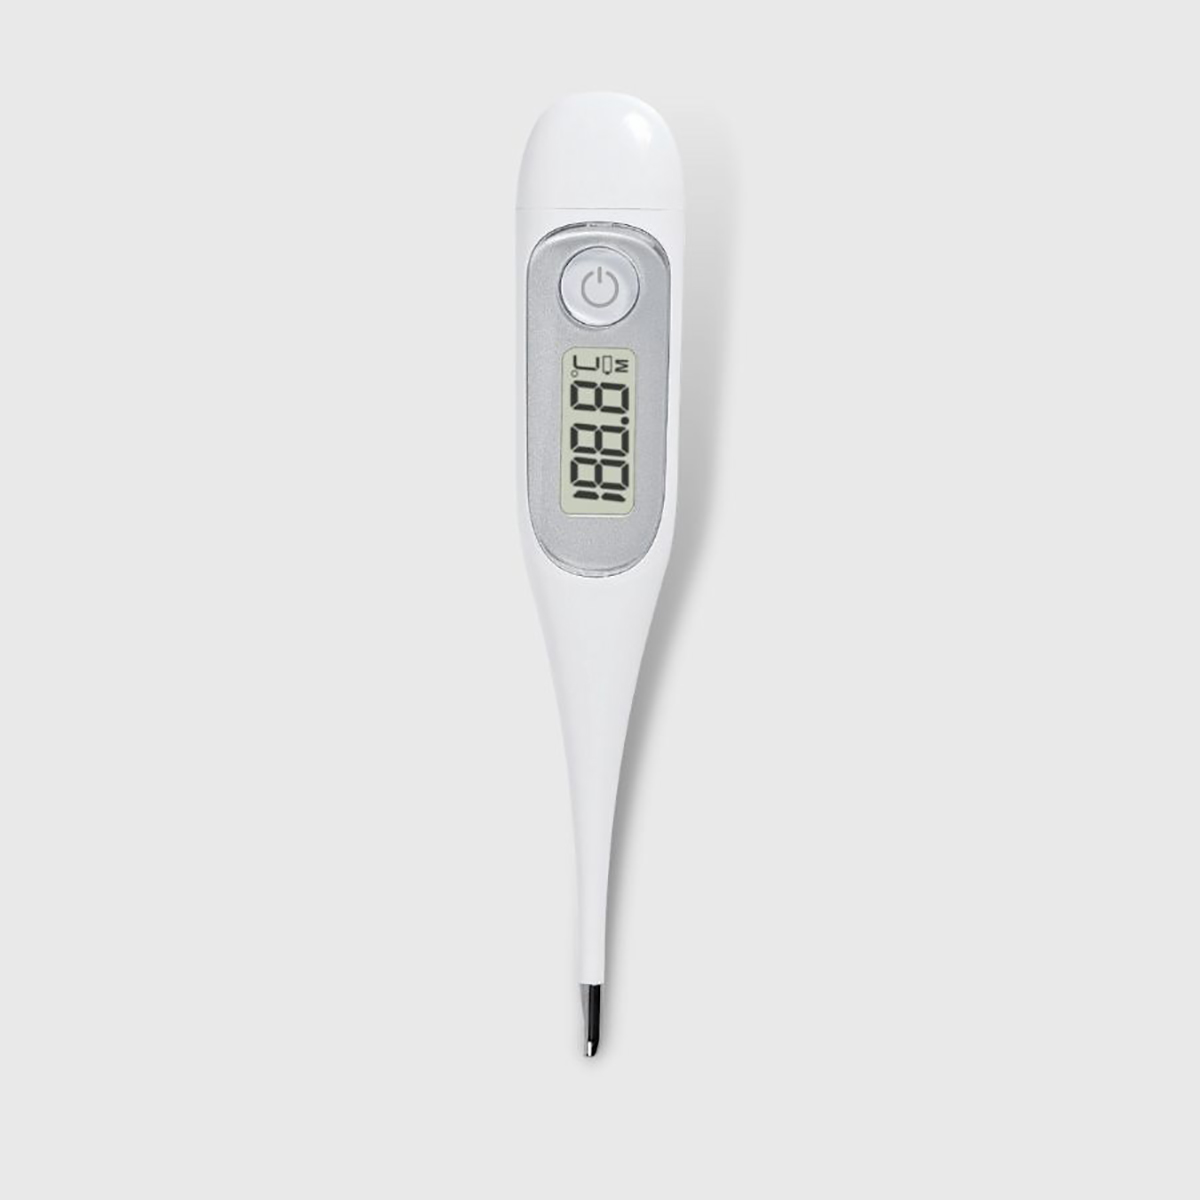 ЦЕ МДР одобрење Различите боје Дигитални водоотпоран термометар за тренутно очитавање за кућну употребу